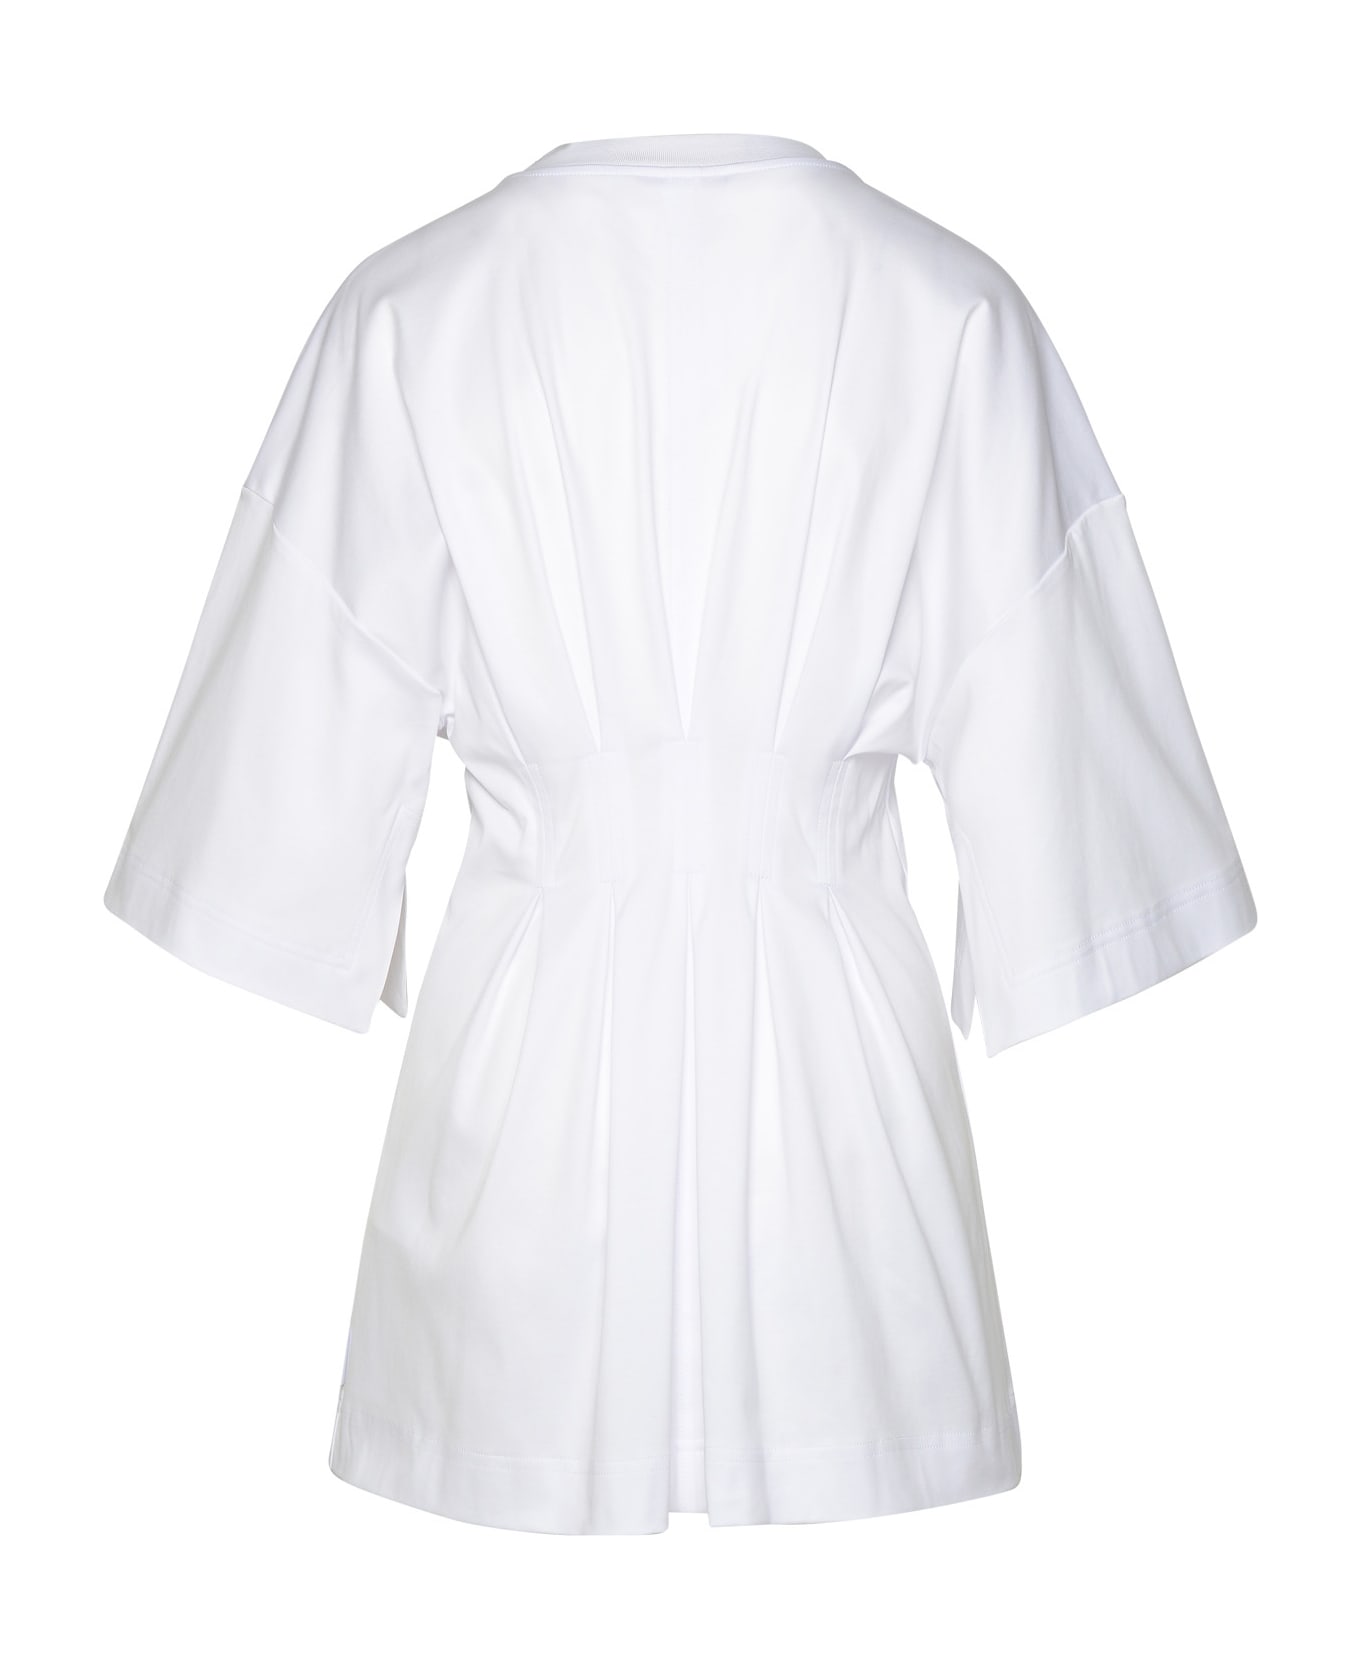 Max Mara 'giotto' White Cotton T-shirt - White